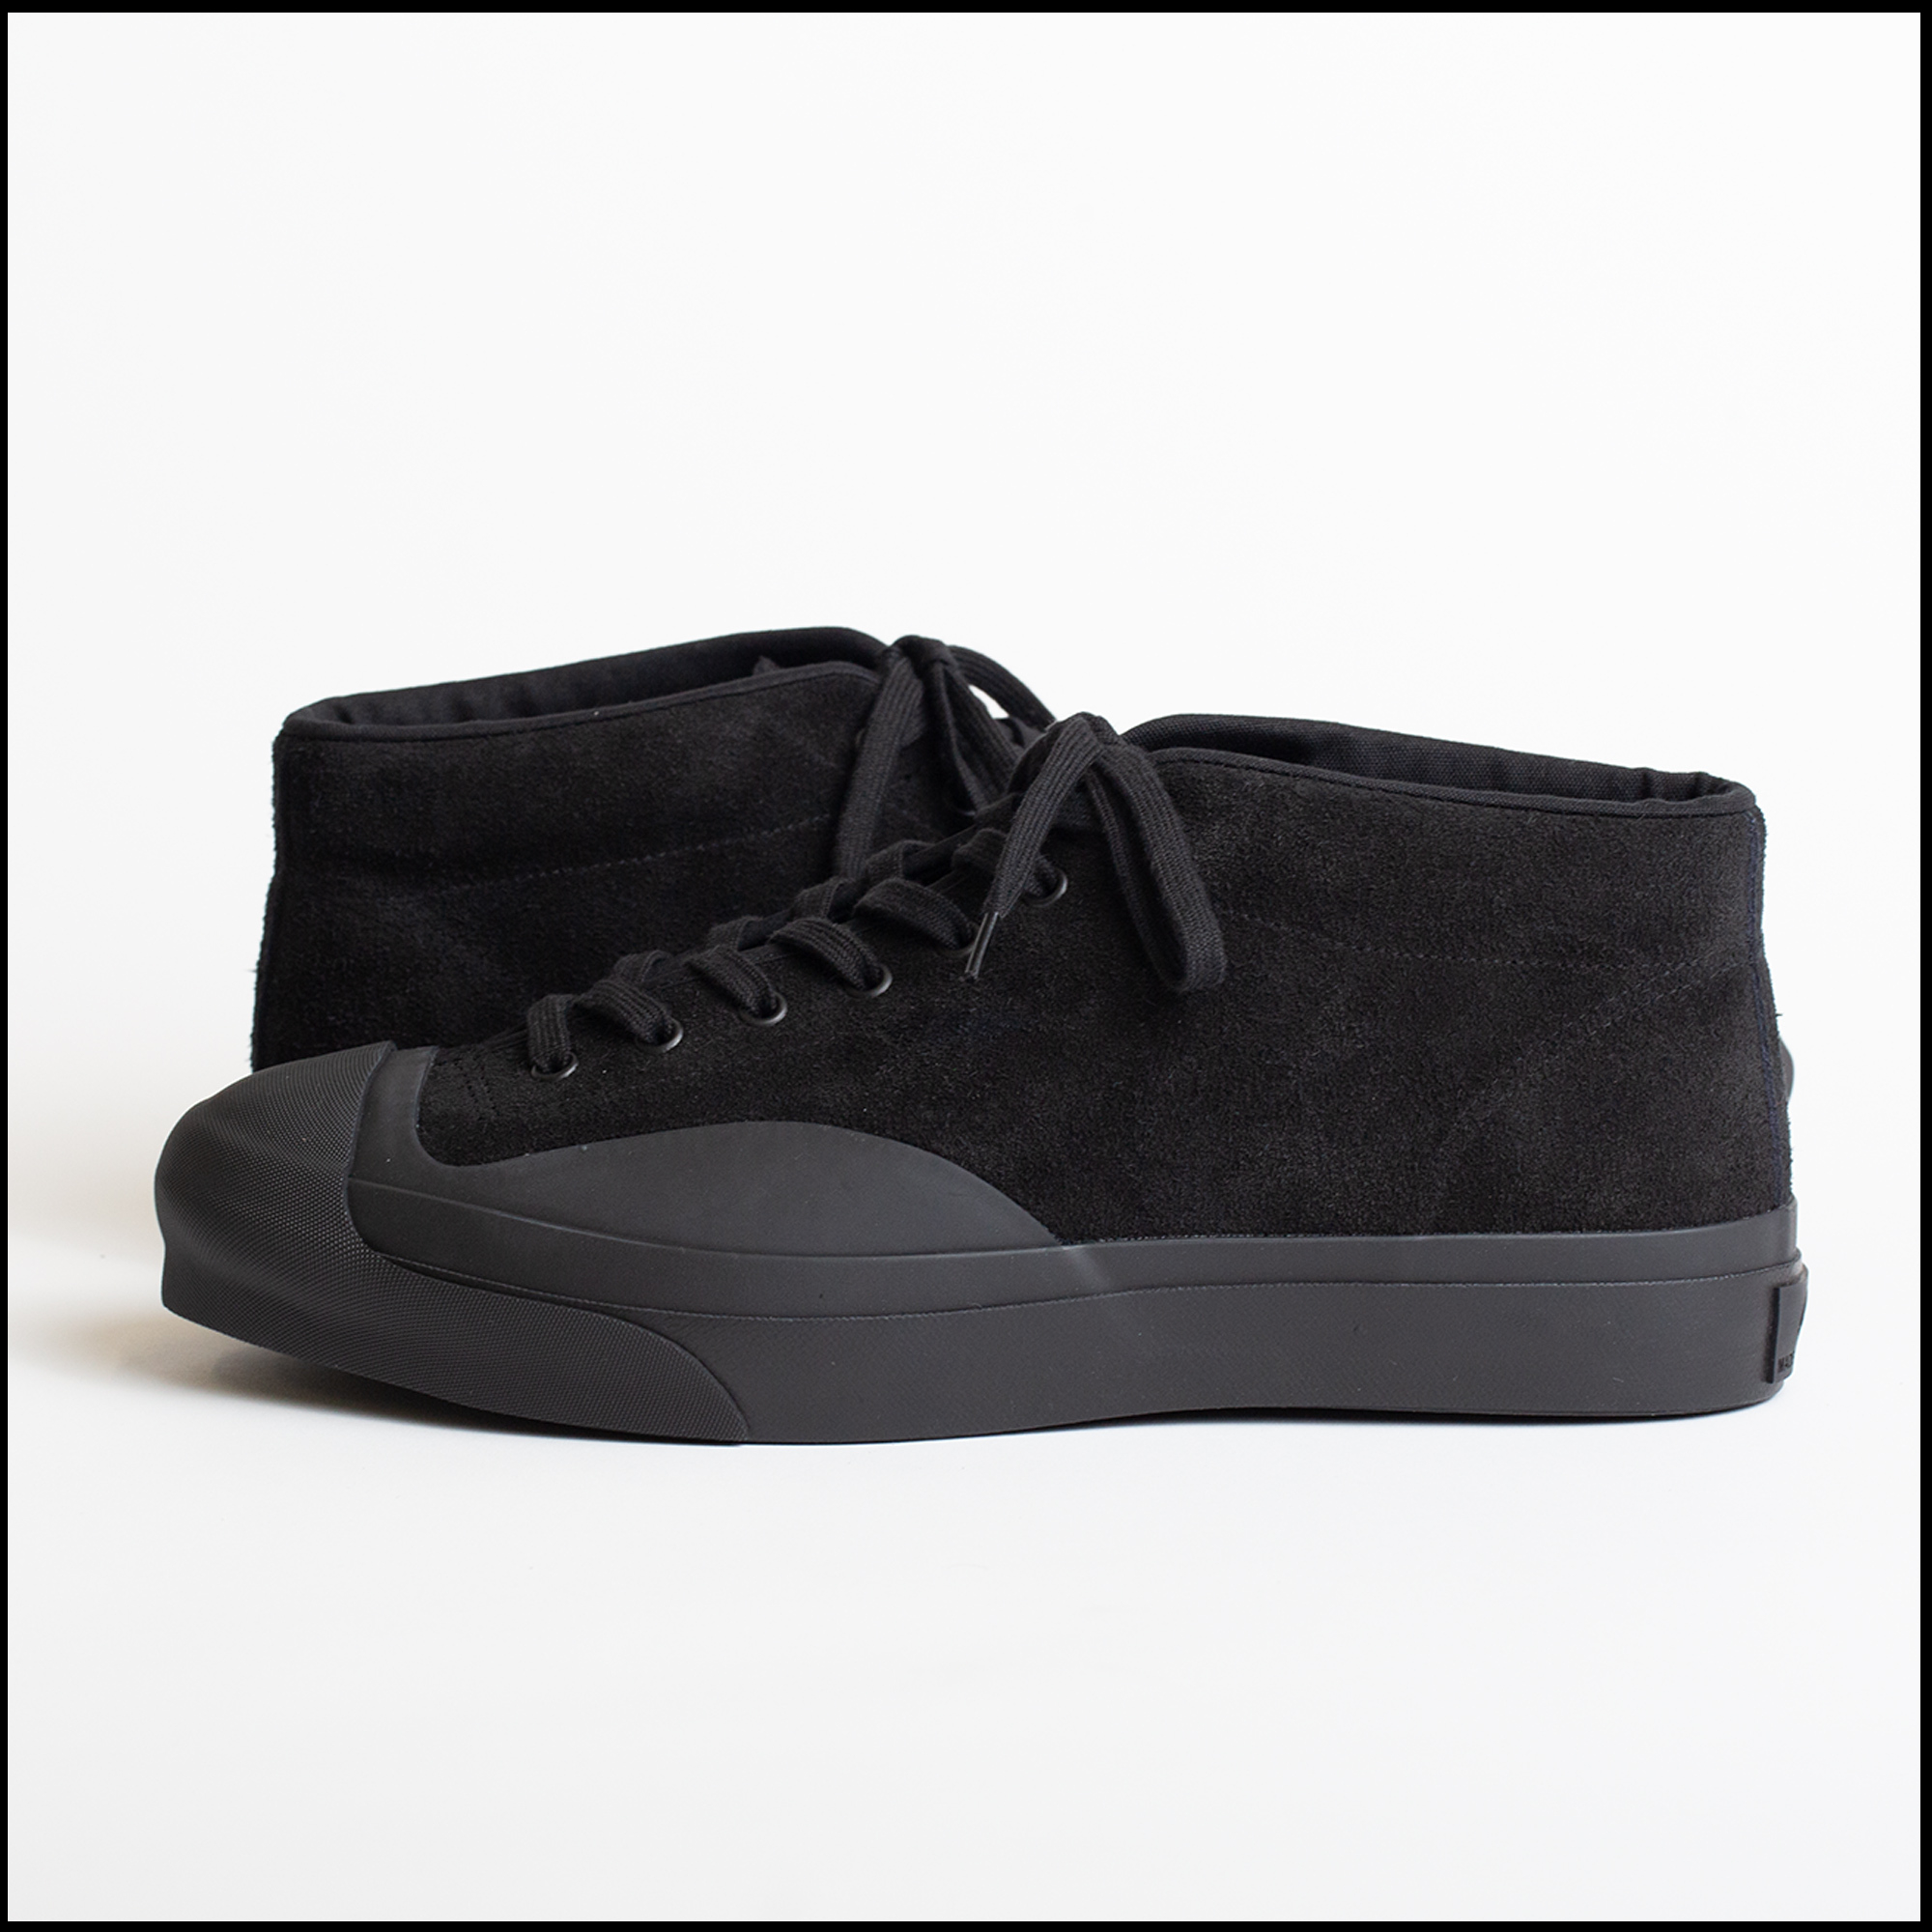 SIDEWALK shoes in Jet black color by Moonstar for Arpenteur